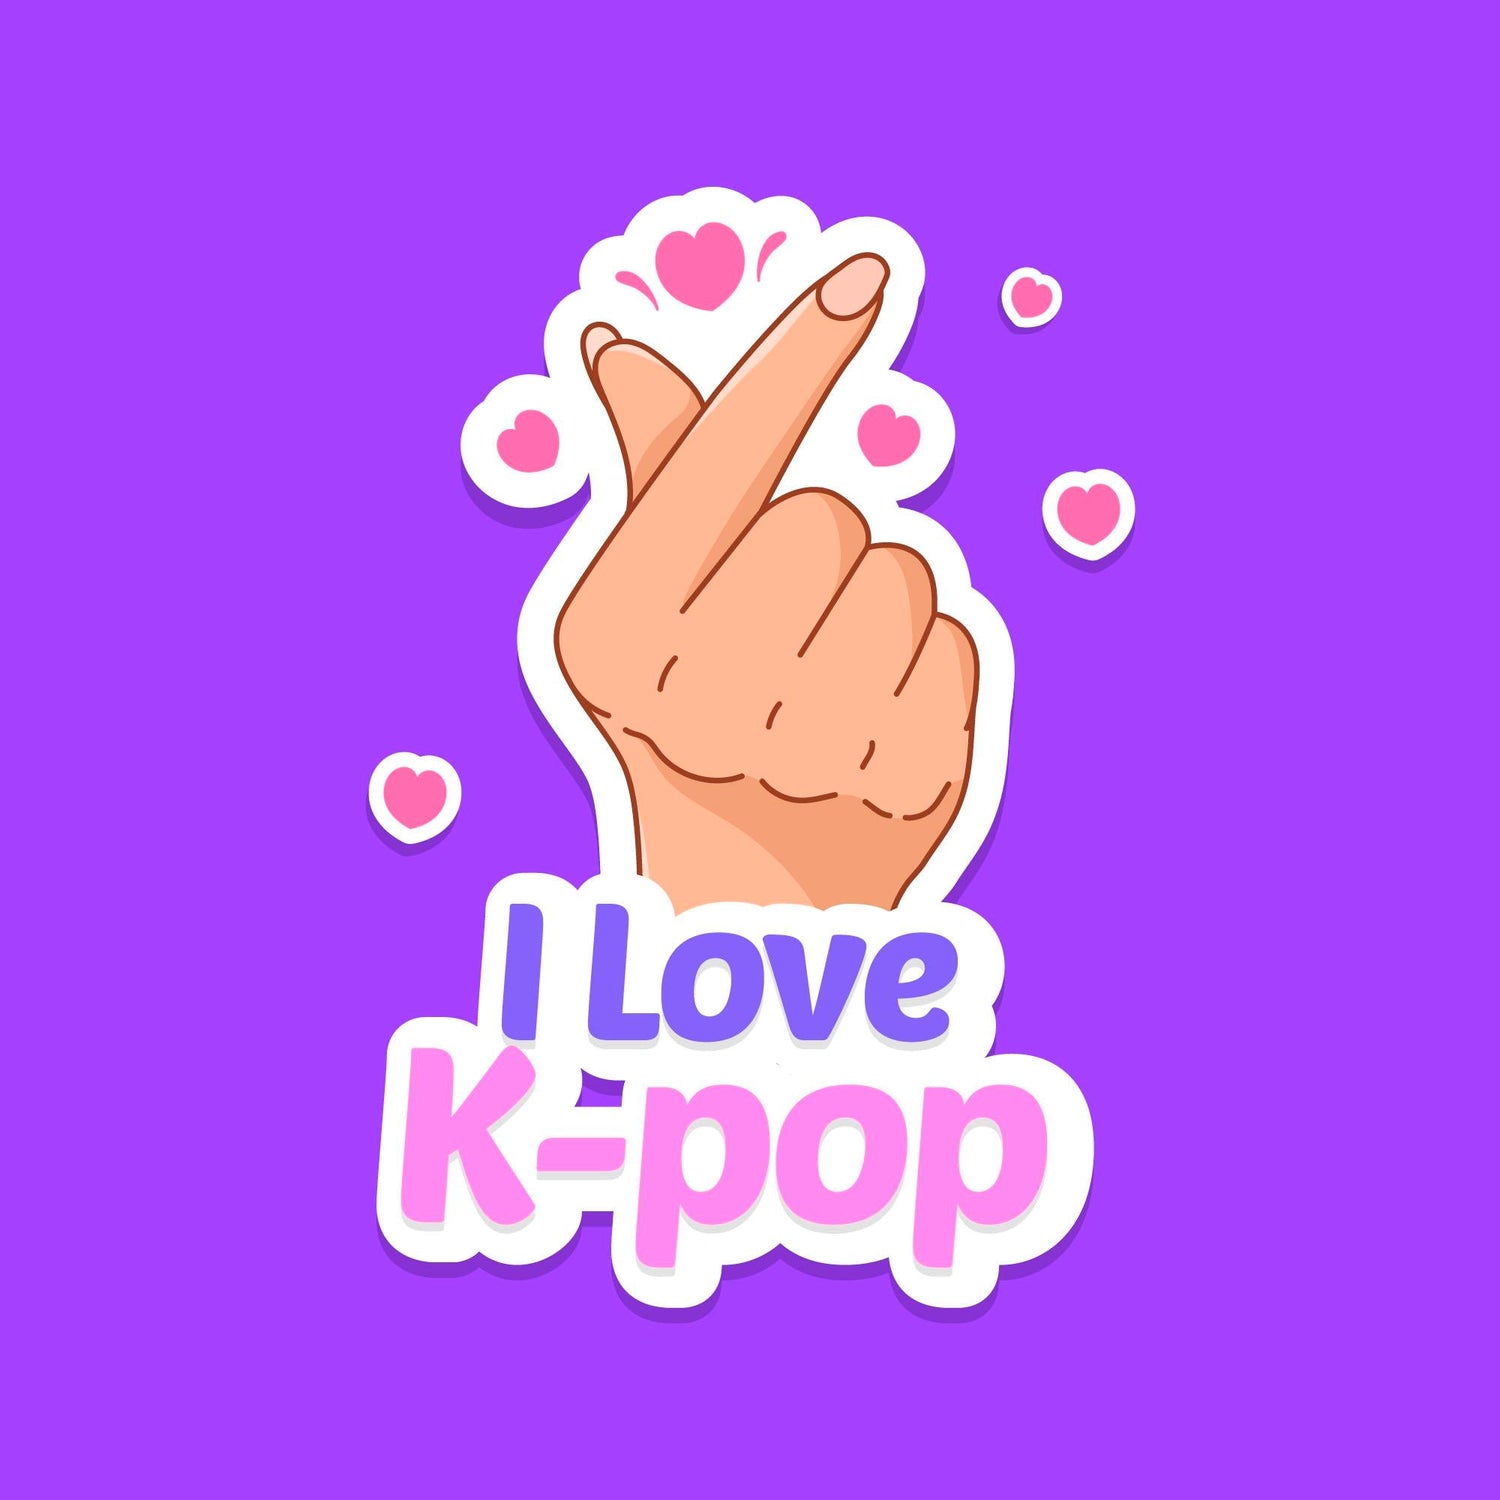 Preorder - Kpop albums - Korean Corner Canada